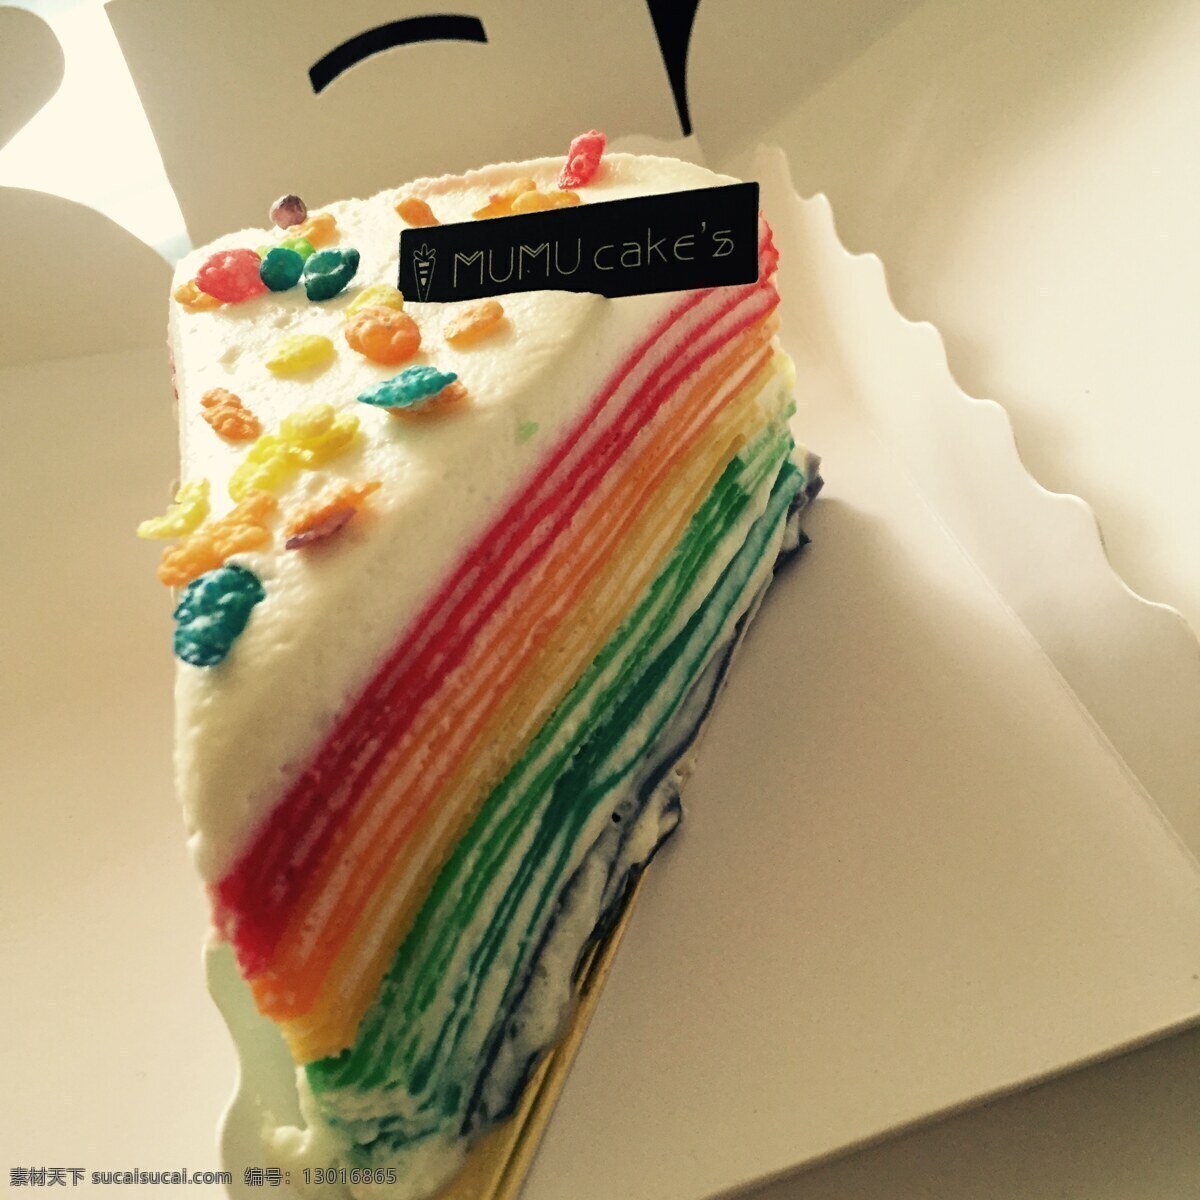 千层蛋糕 蛋糕 千层 彩虹 美食 彩虹蛋糕 餐饮美食